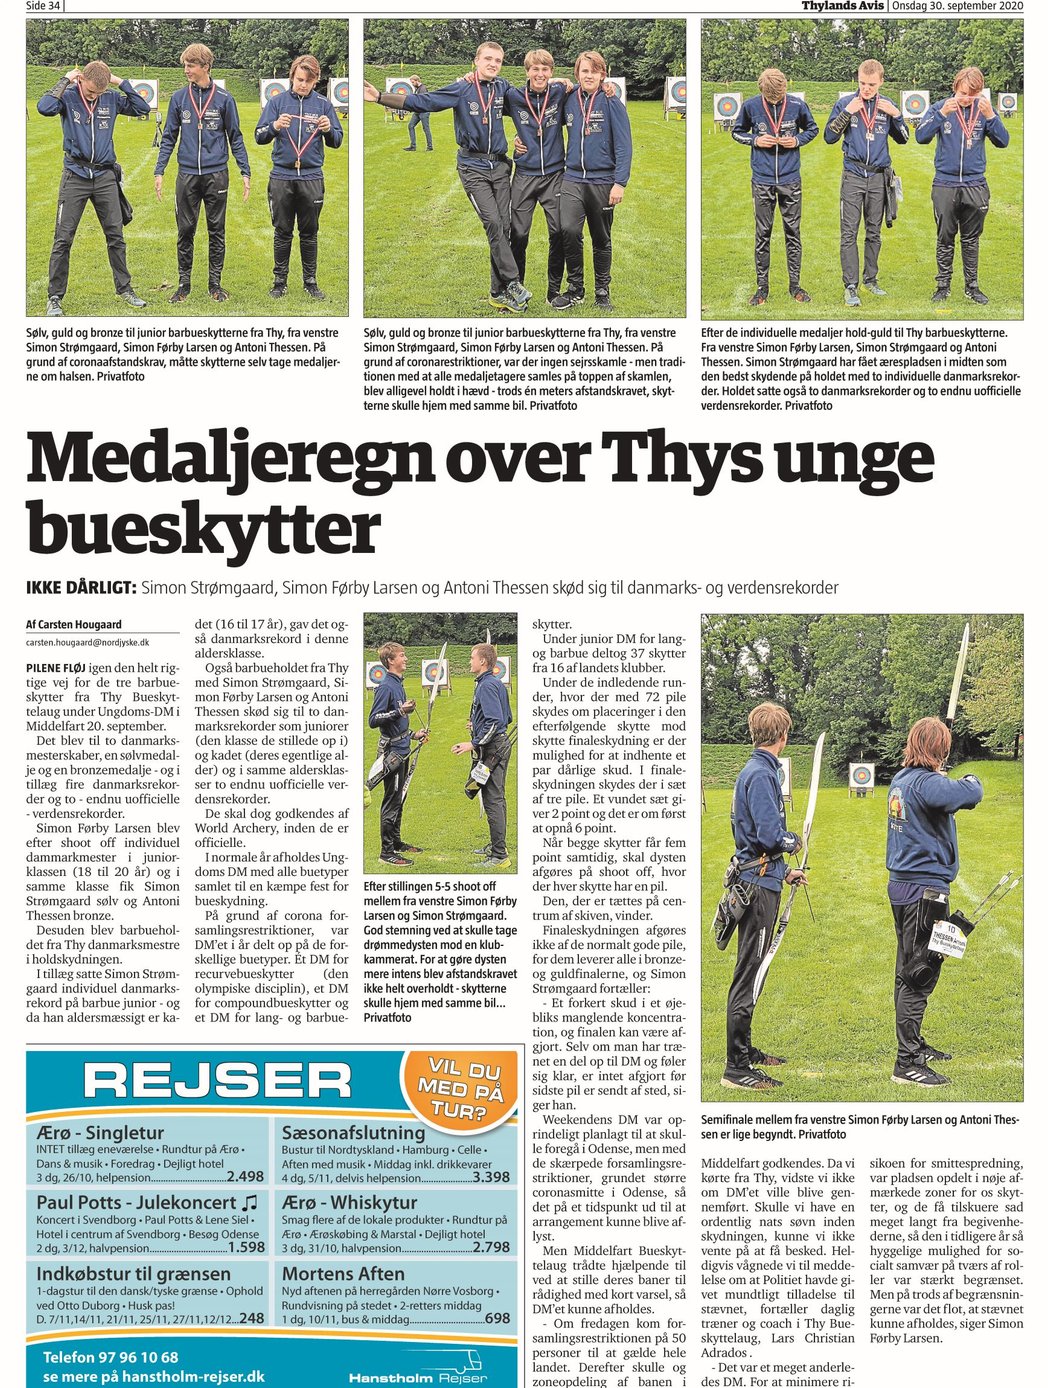 Medaljeregn over Thys unge bueskytter – Thylands Avis d. 30/9-2020